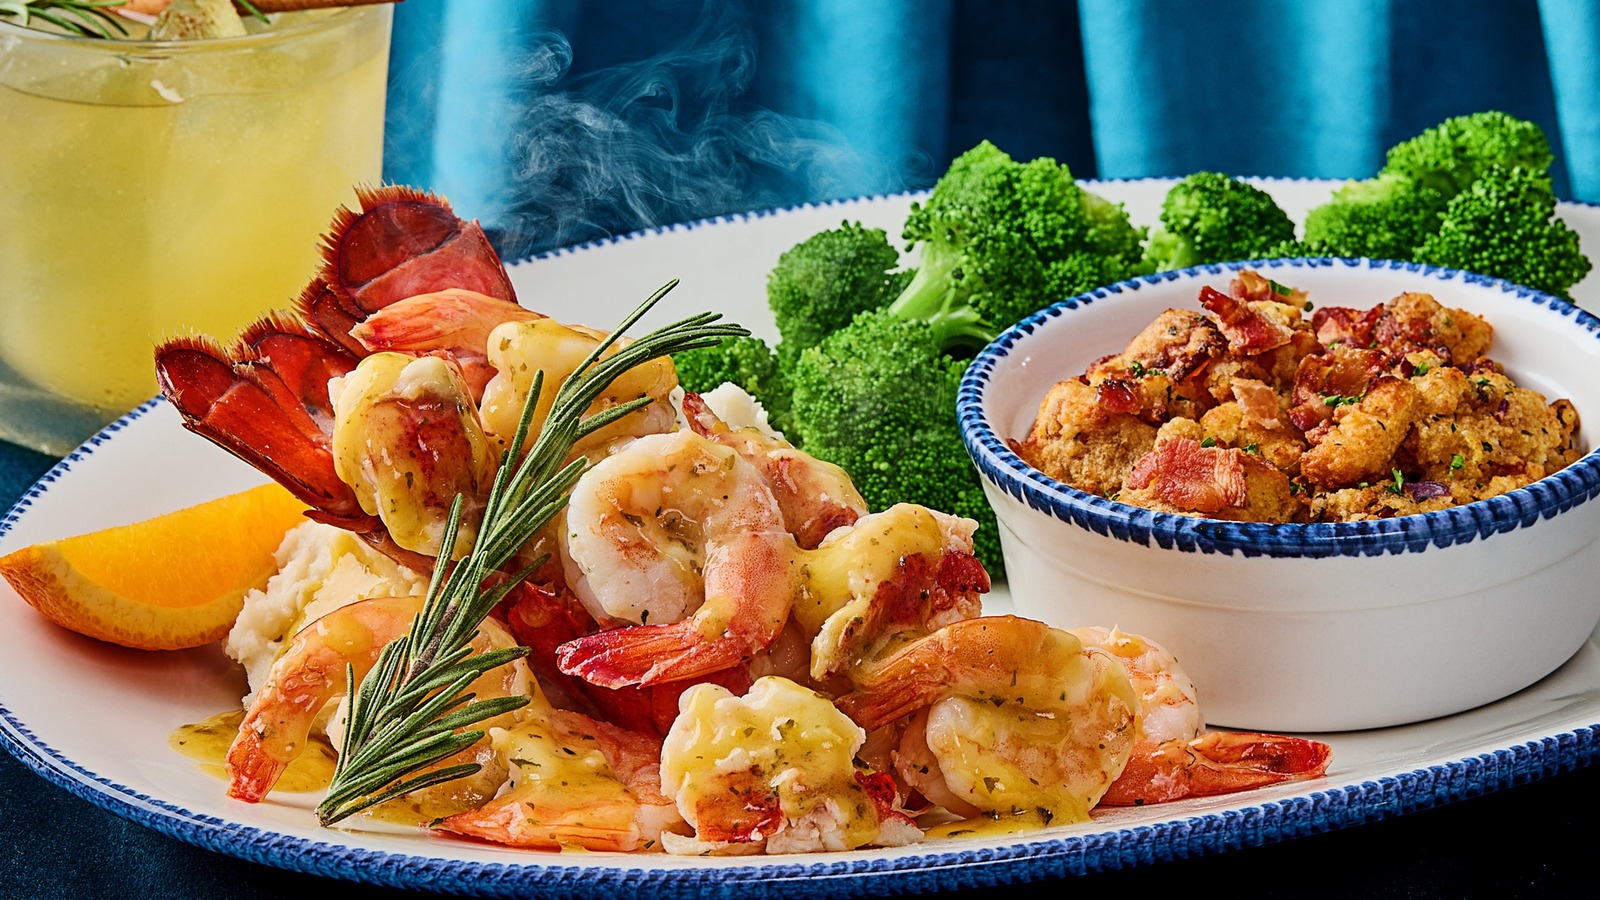 Red Lobster's New Lobster & Shrimp Celebration Is A Seafood SmashUp